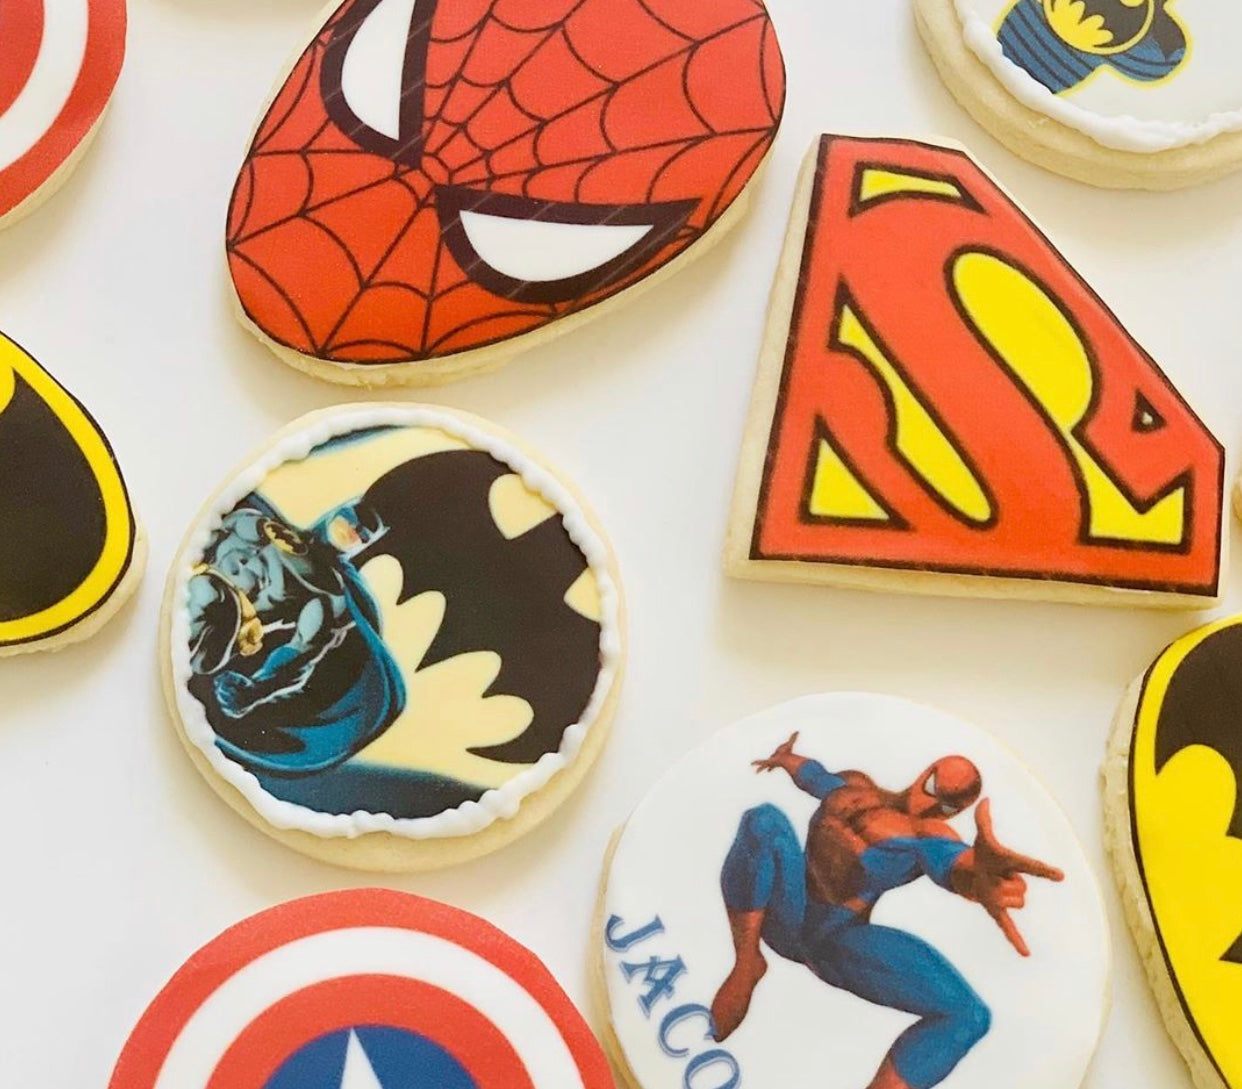 Super Hero's Cookies